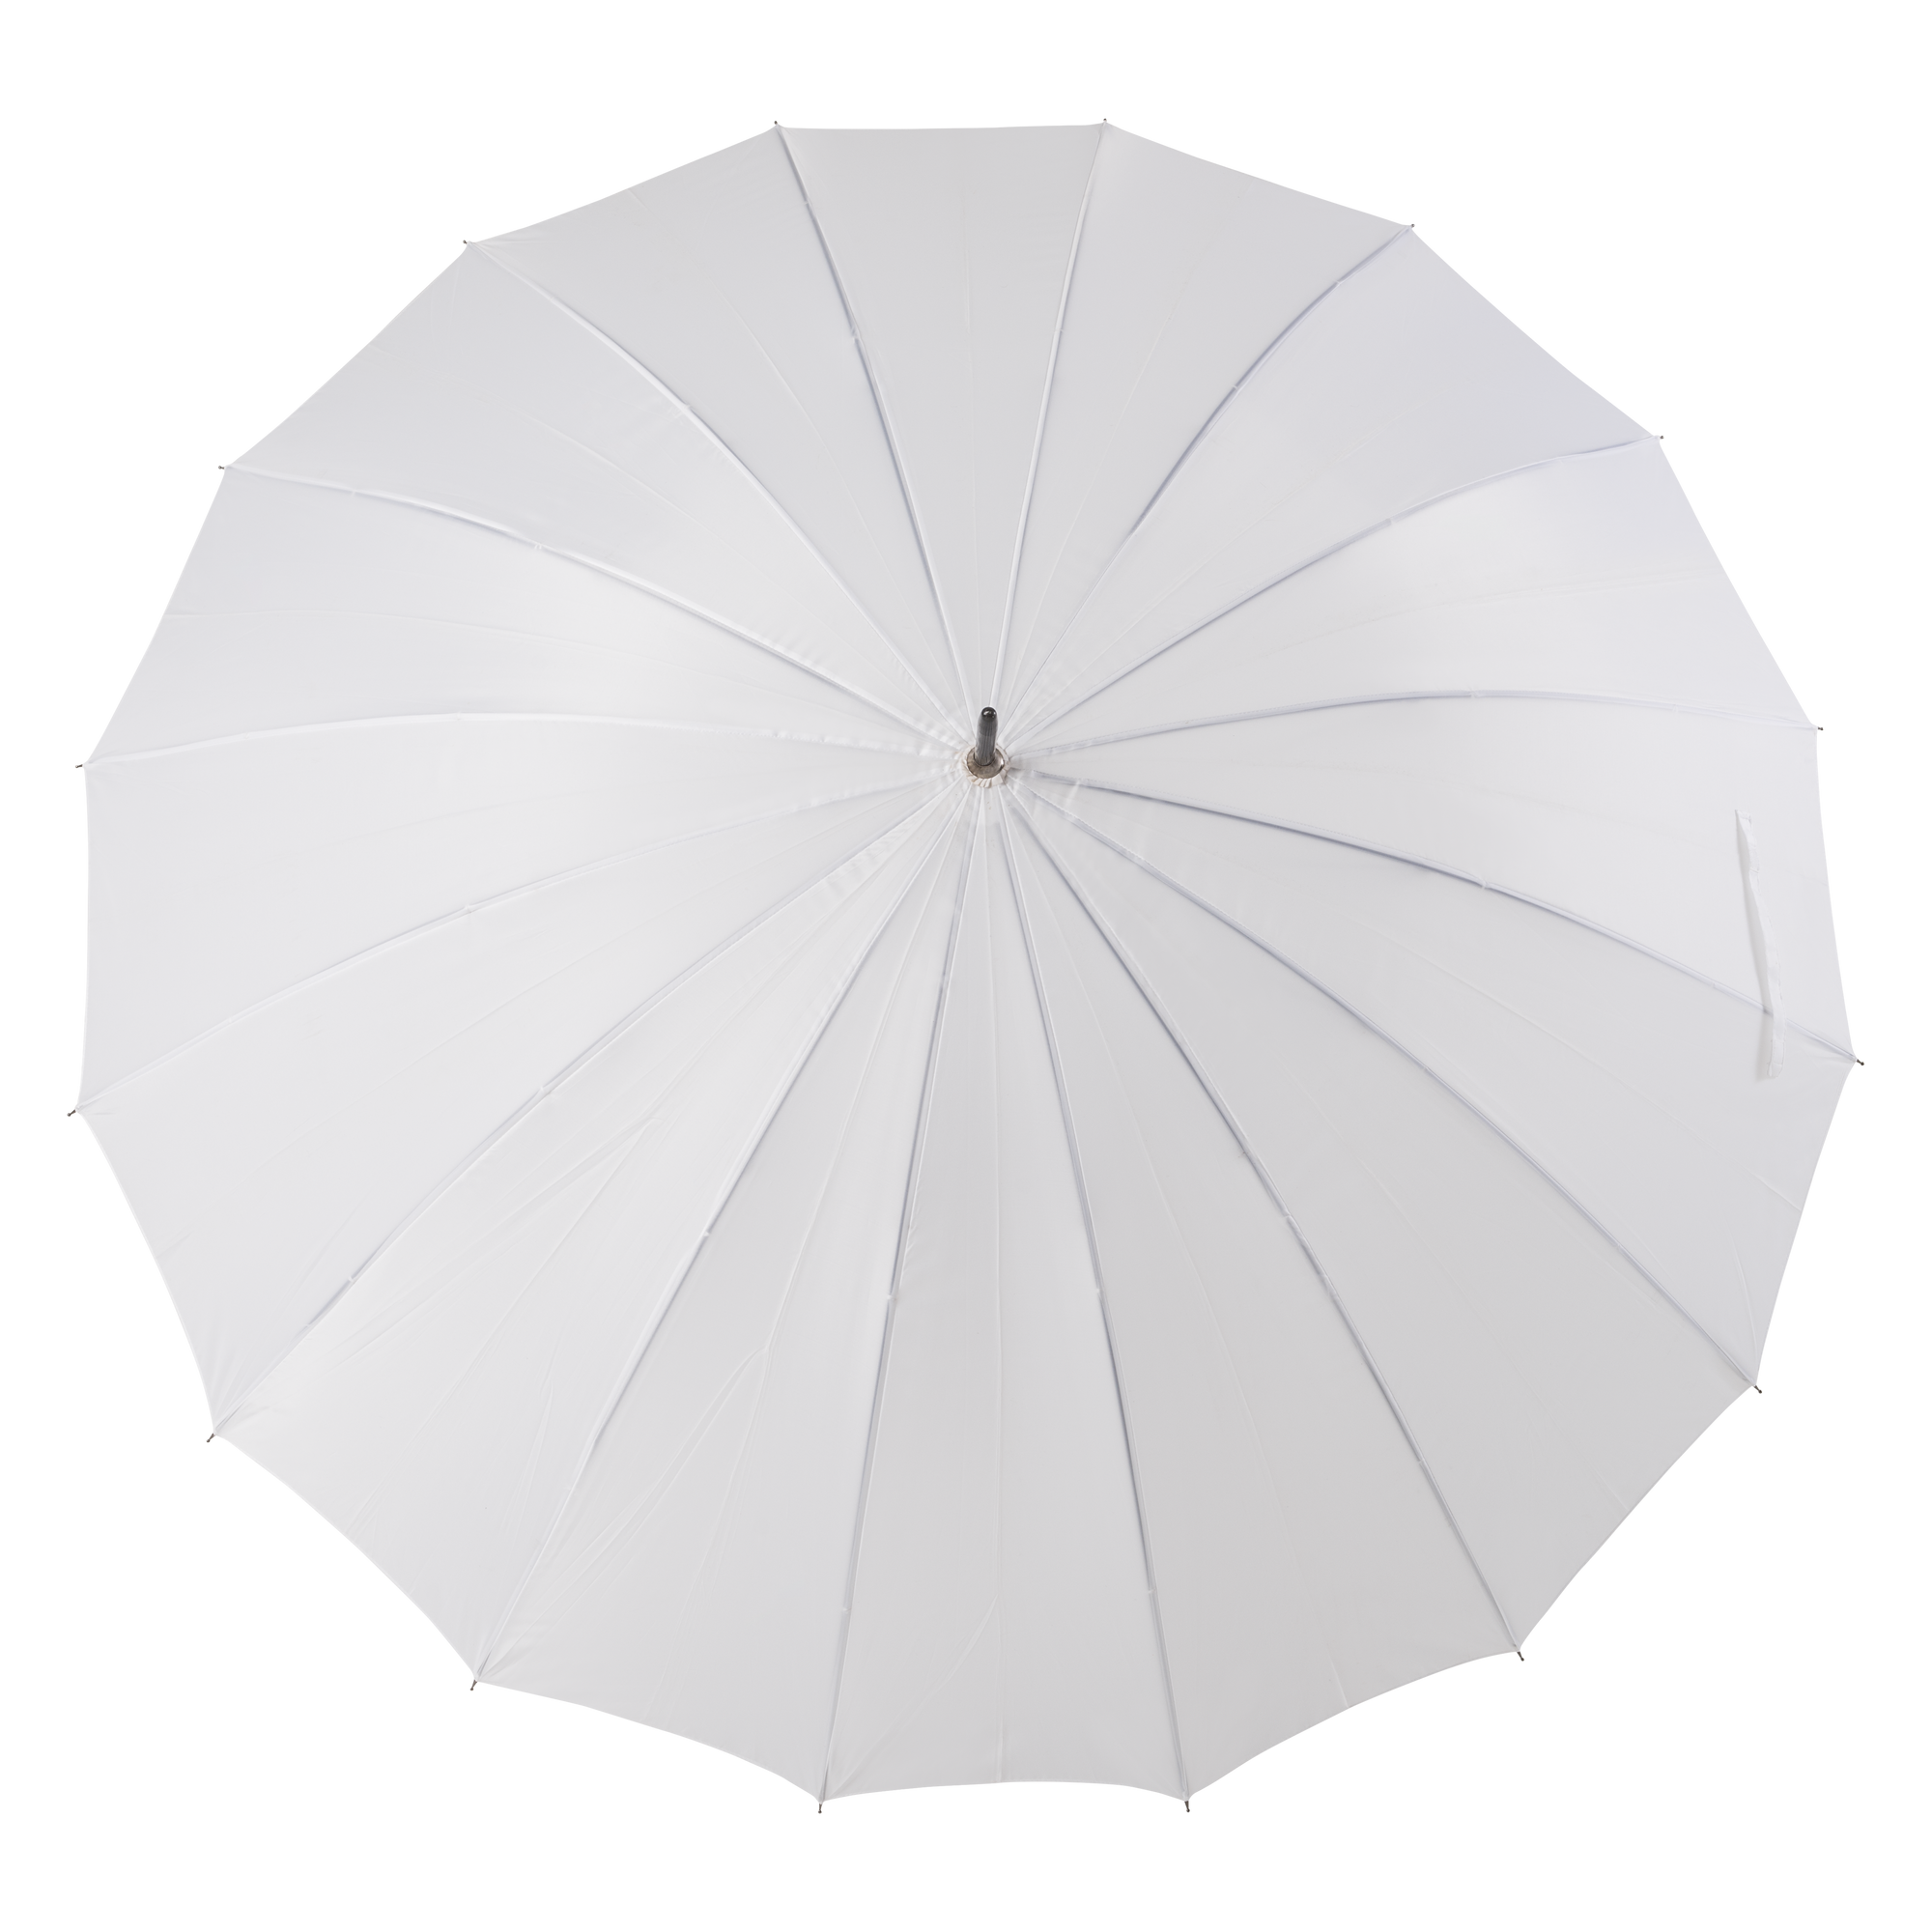 White umbrellas for rental